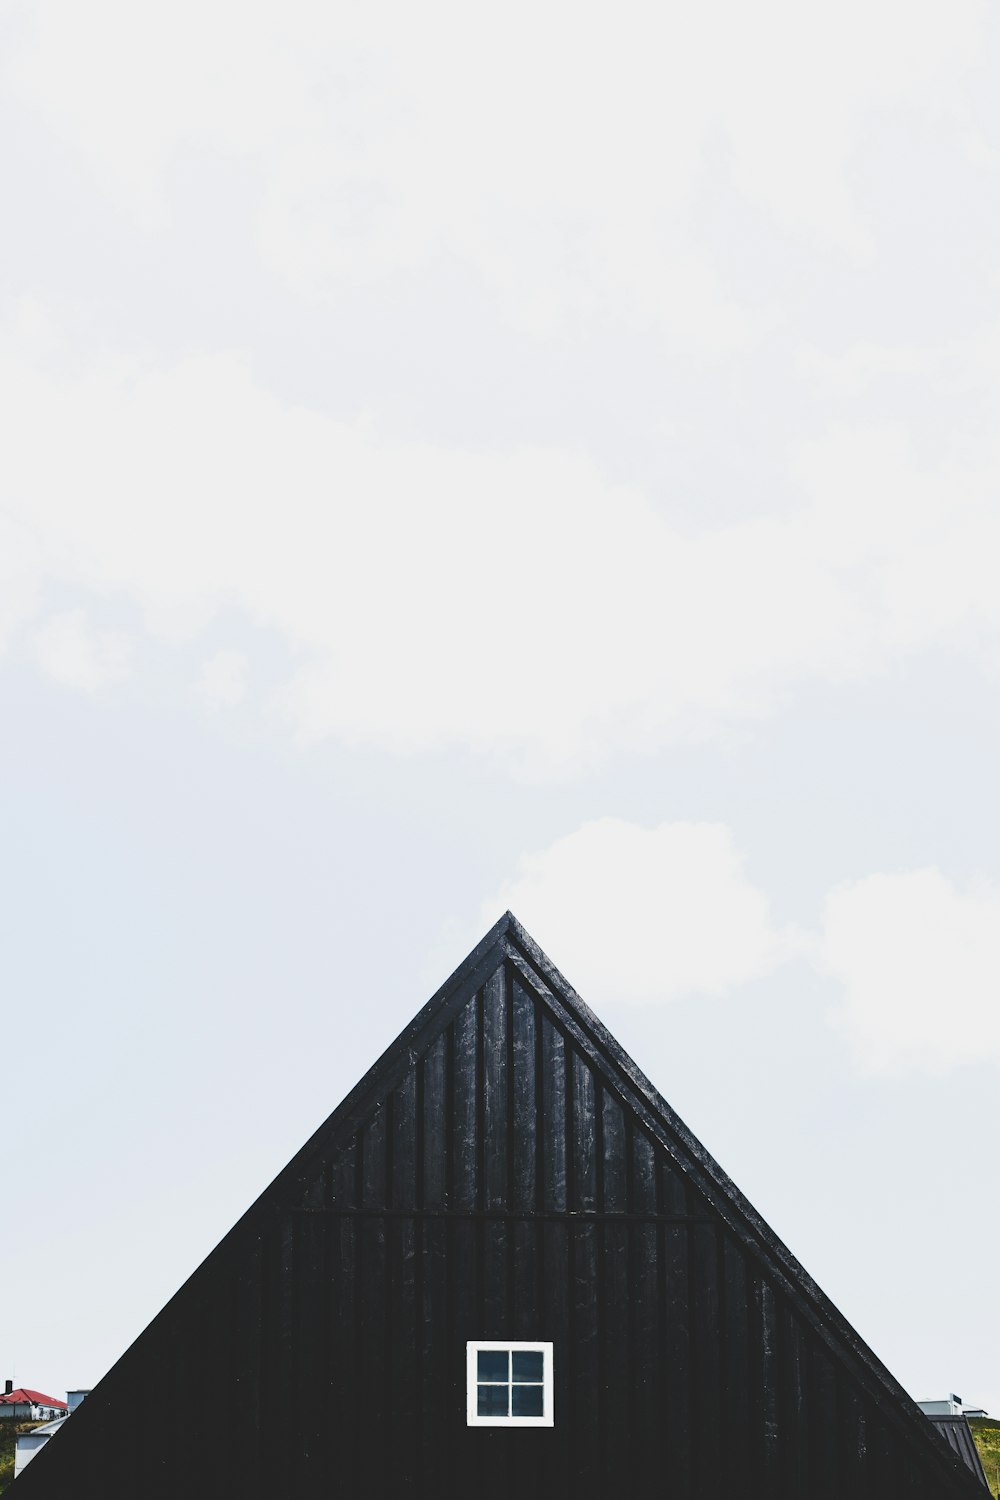 black wooden house under white sky